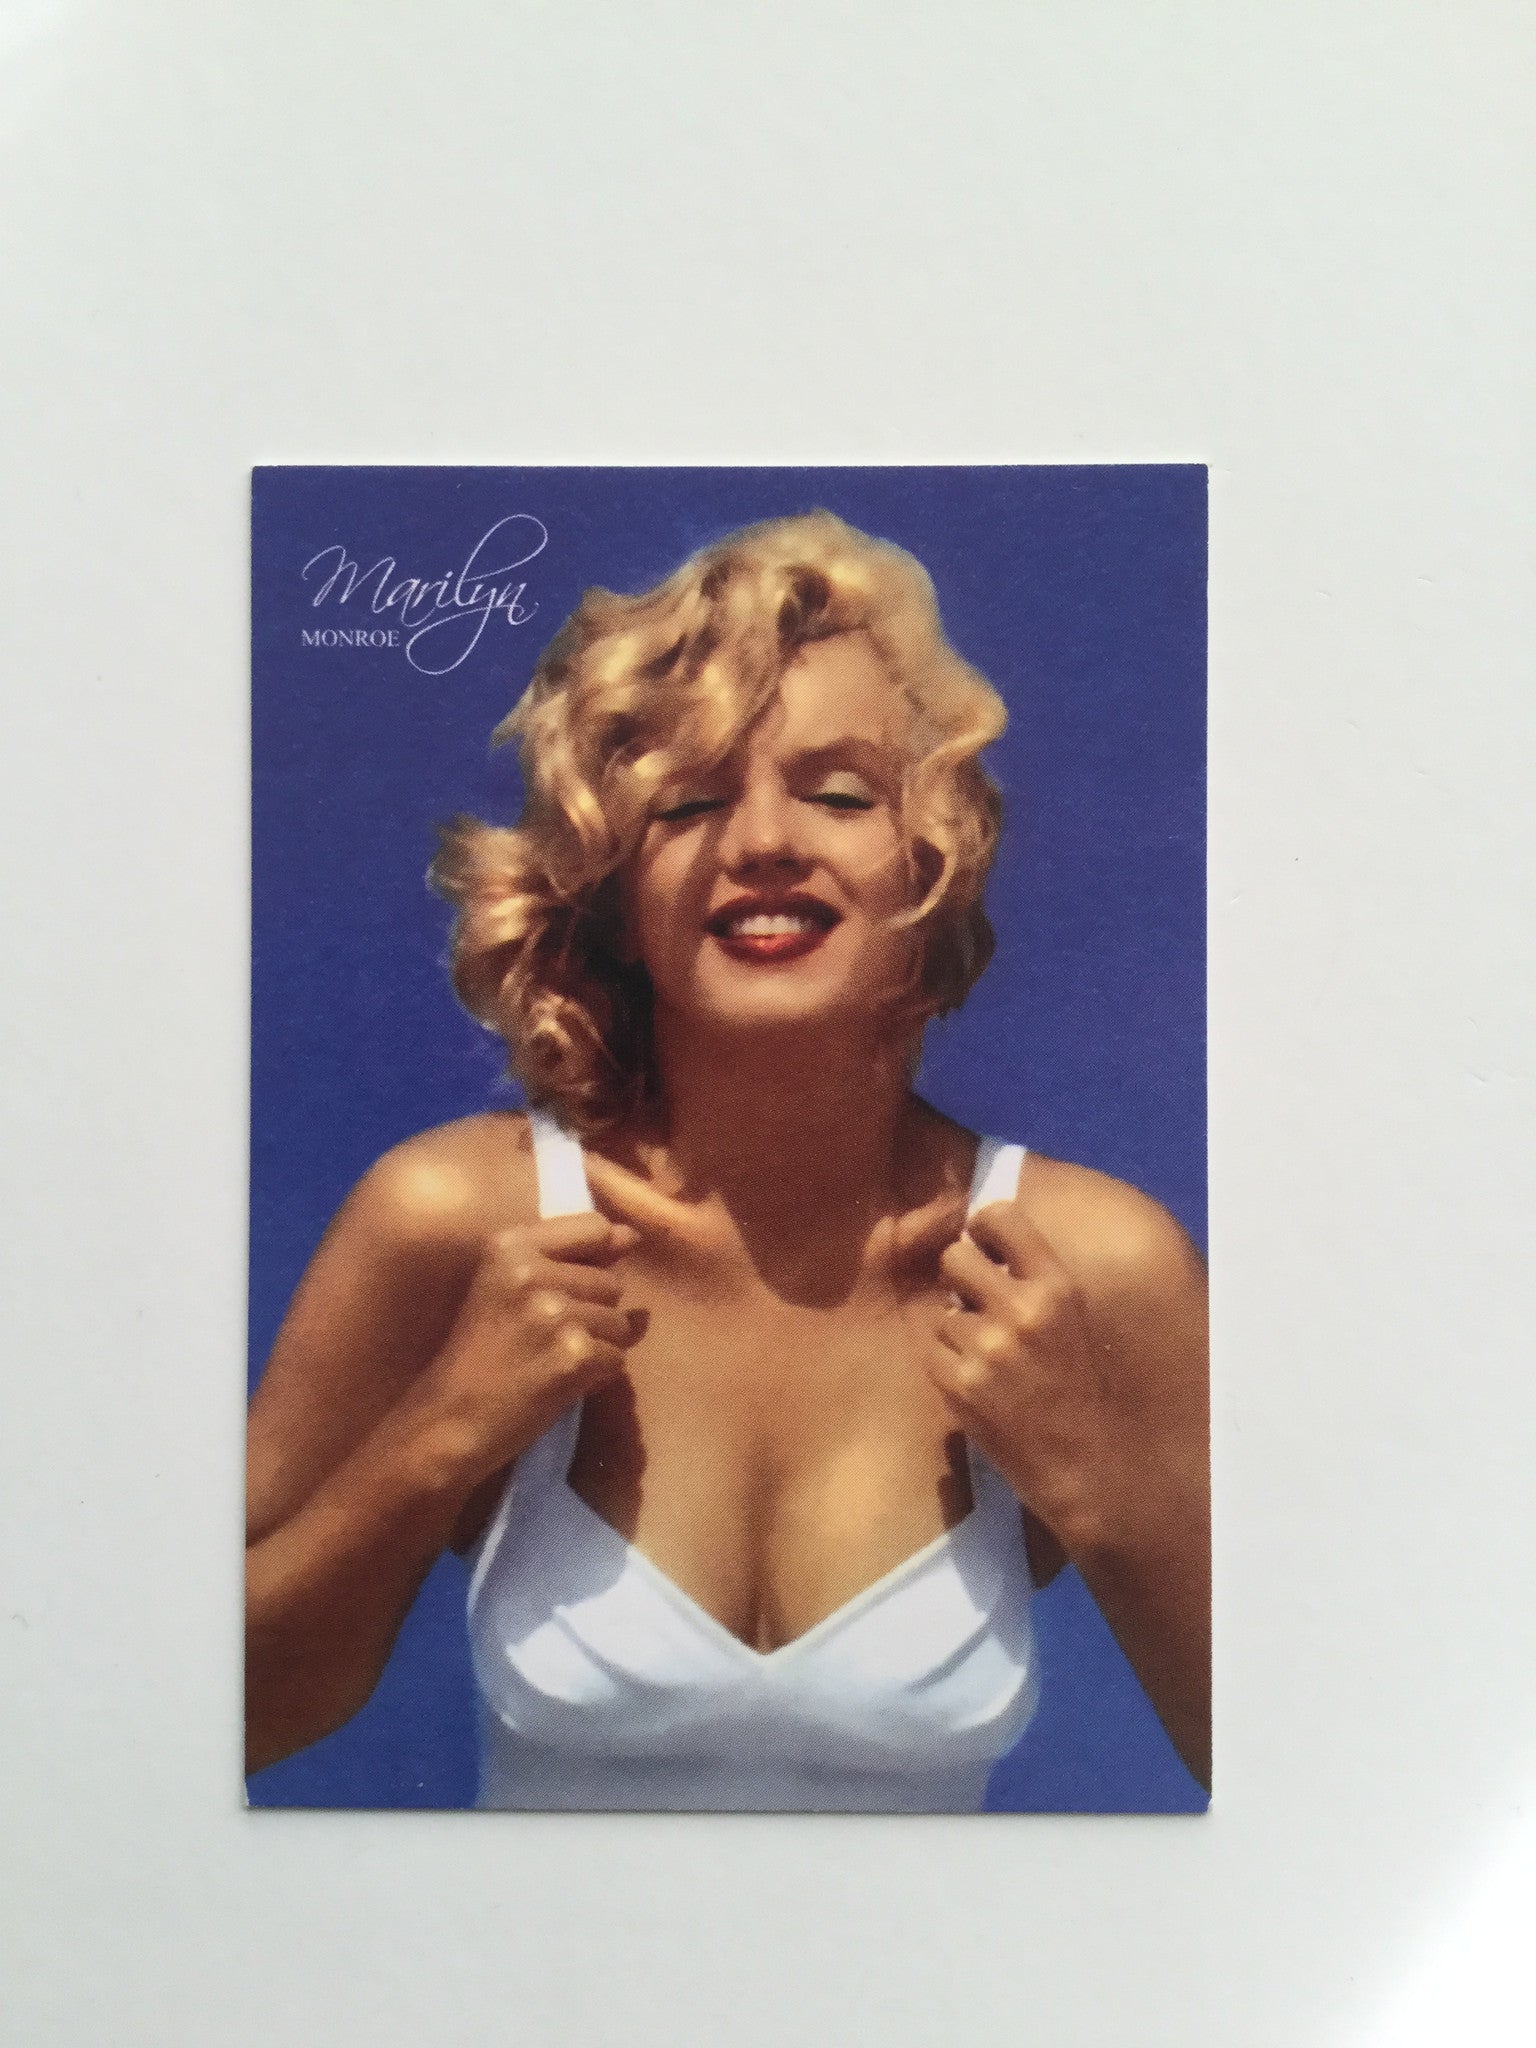 Marilyn Monroe Fanexpo rare promo card